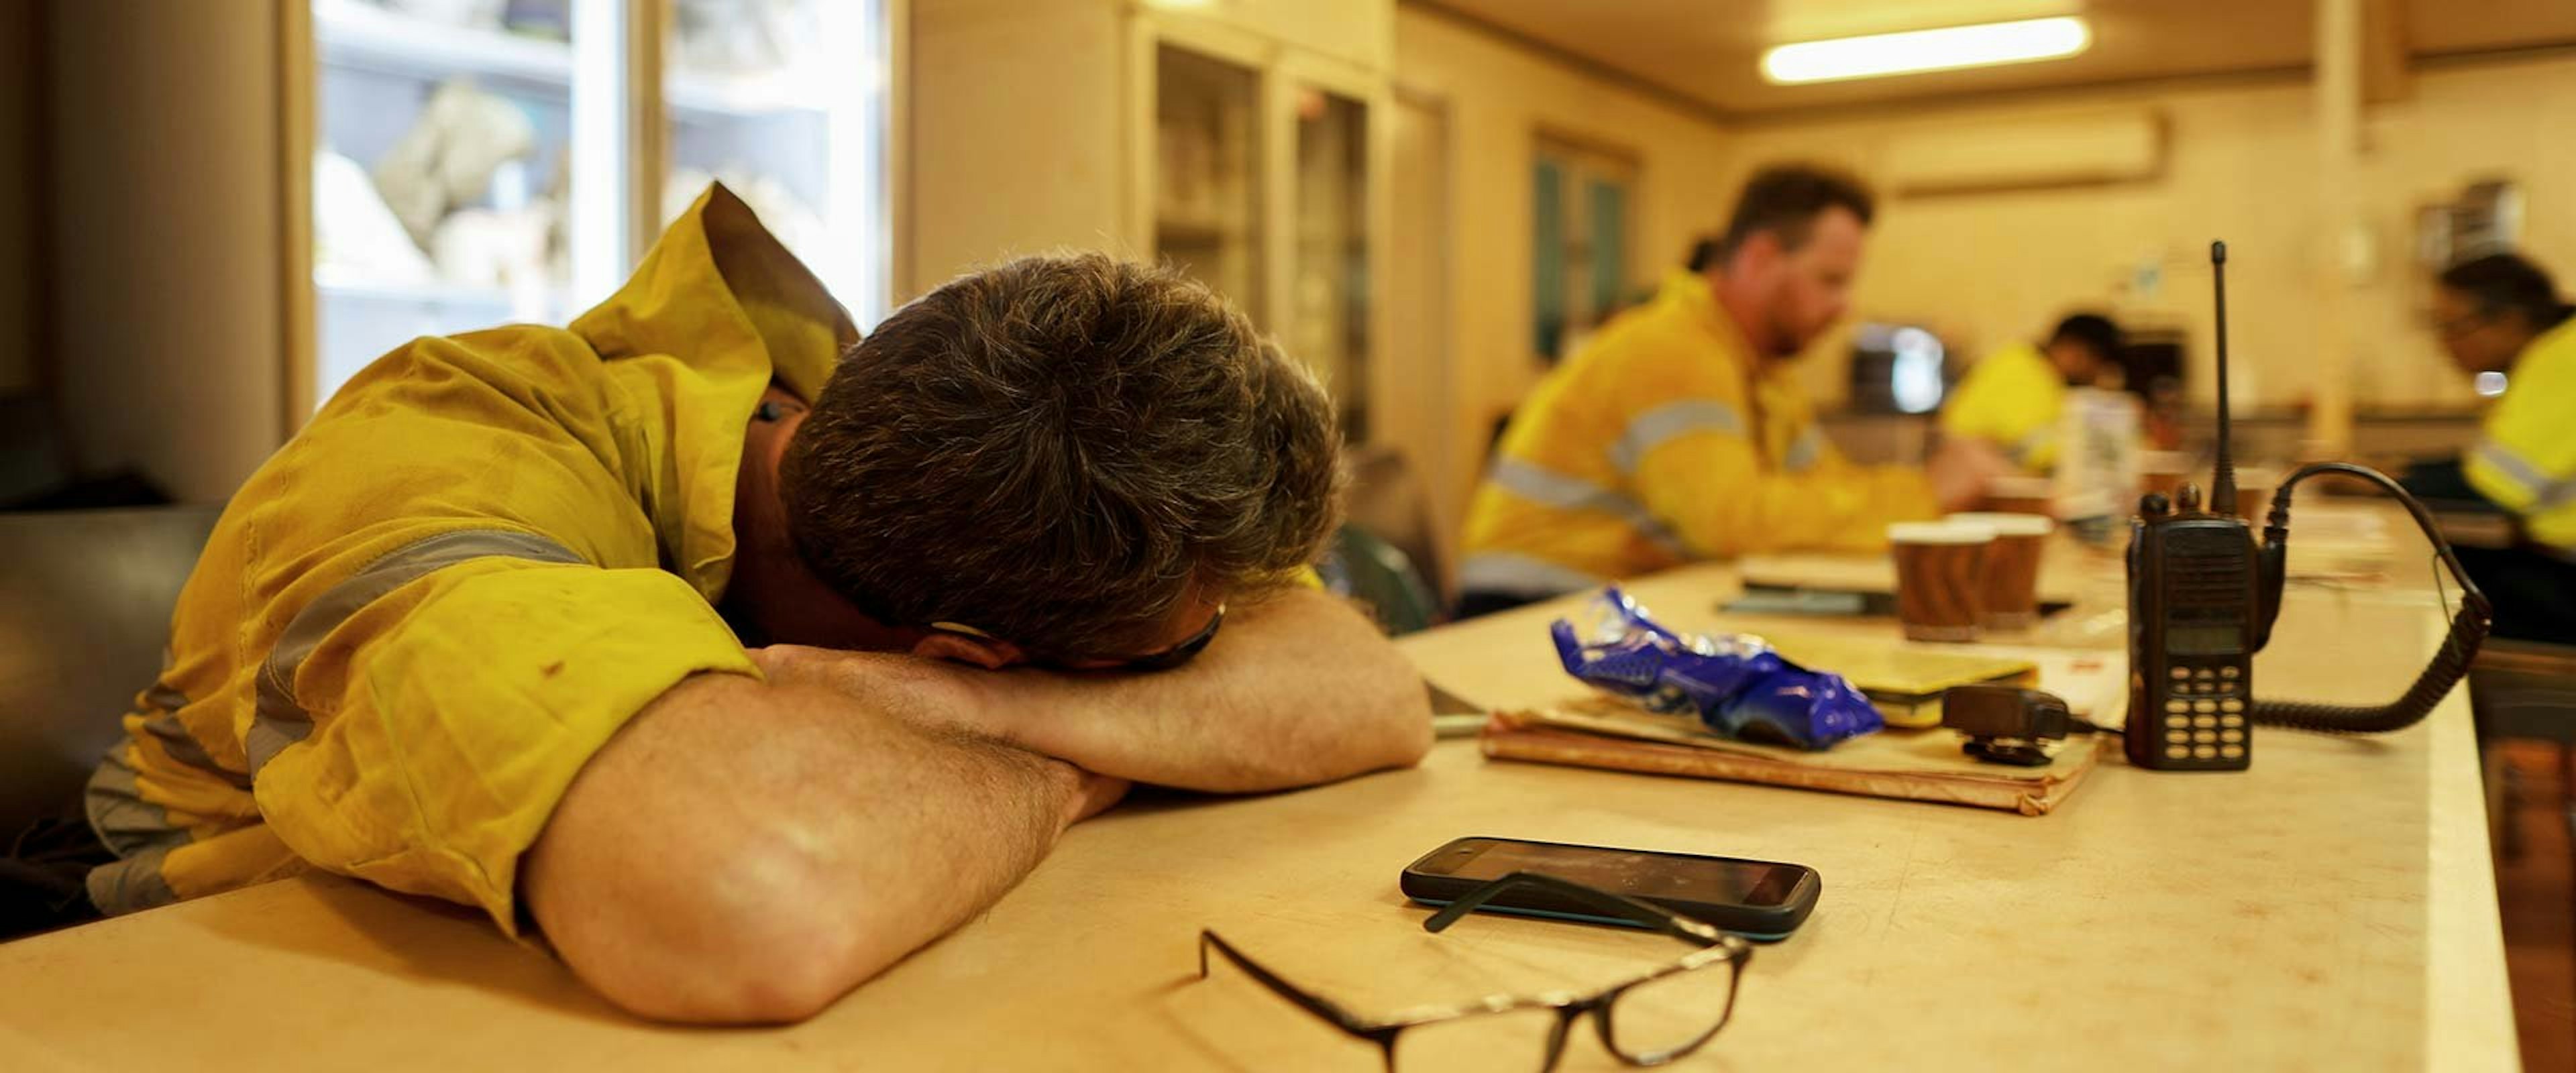 Tired miner resting in break room